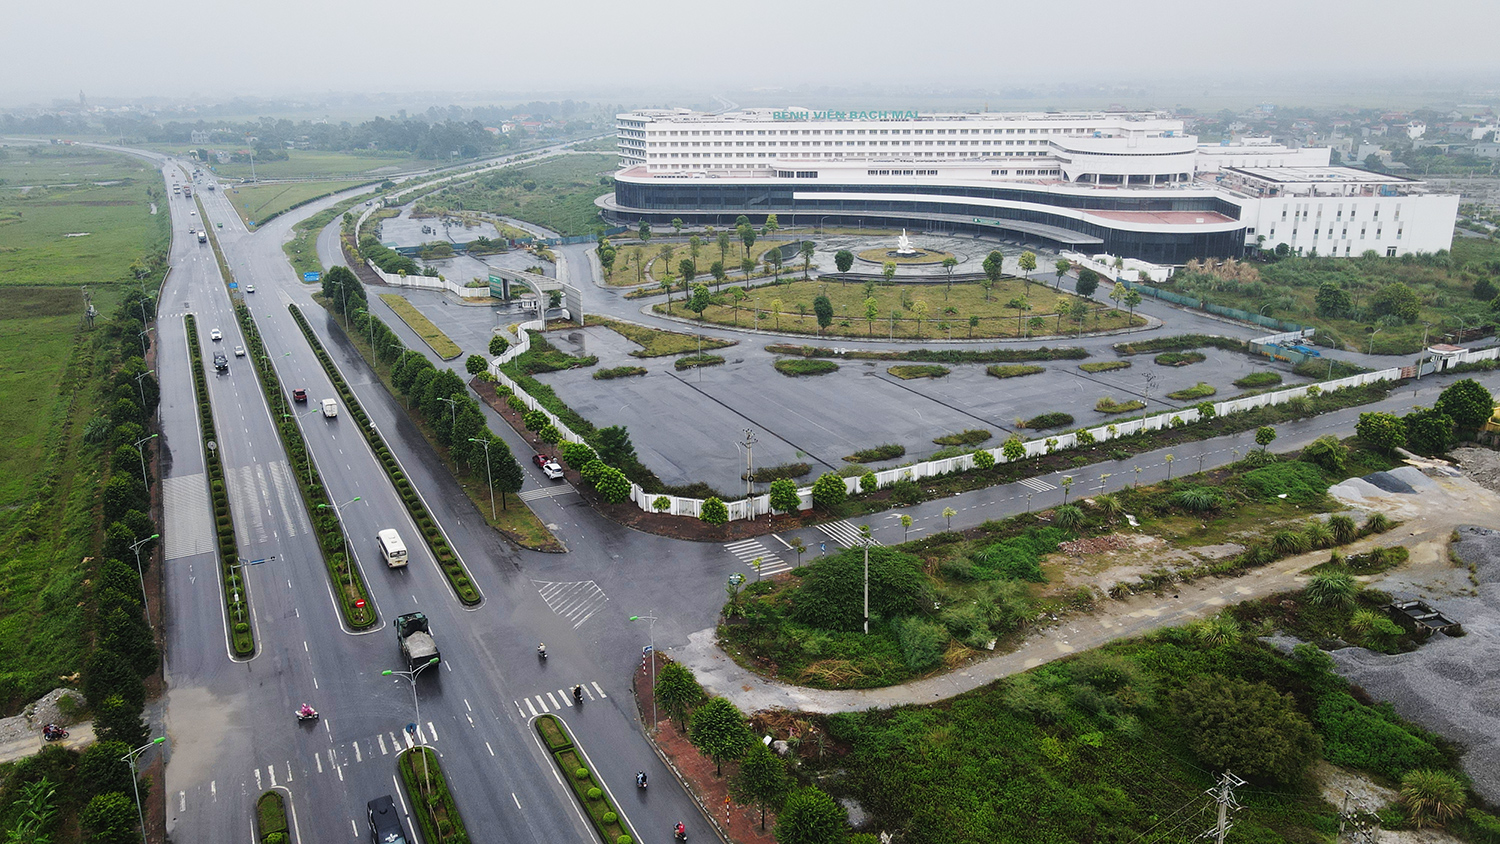 Dự án bệnh viện Bạch Mai cơ sở 2 ở TP.&nbsp;Phủ Lý (Hà Nam) khởi công cuối năm 2014, dự kiến hoàn thành vào năm 2017 với tổng mức đầu tư hơn 4.990 tỷ đồng.&nbsp;Tuy nhiên, bệnh viện đang trong tình trạng bỏ hoang.